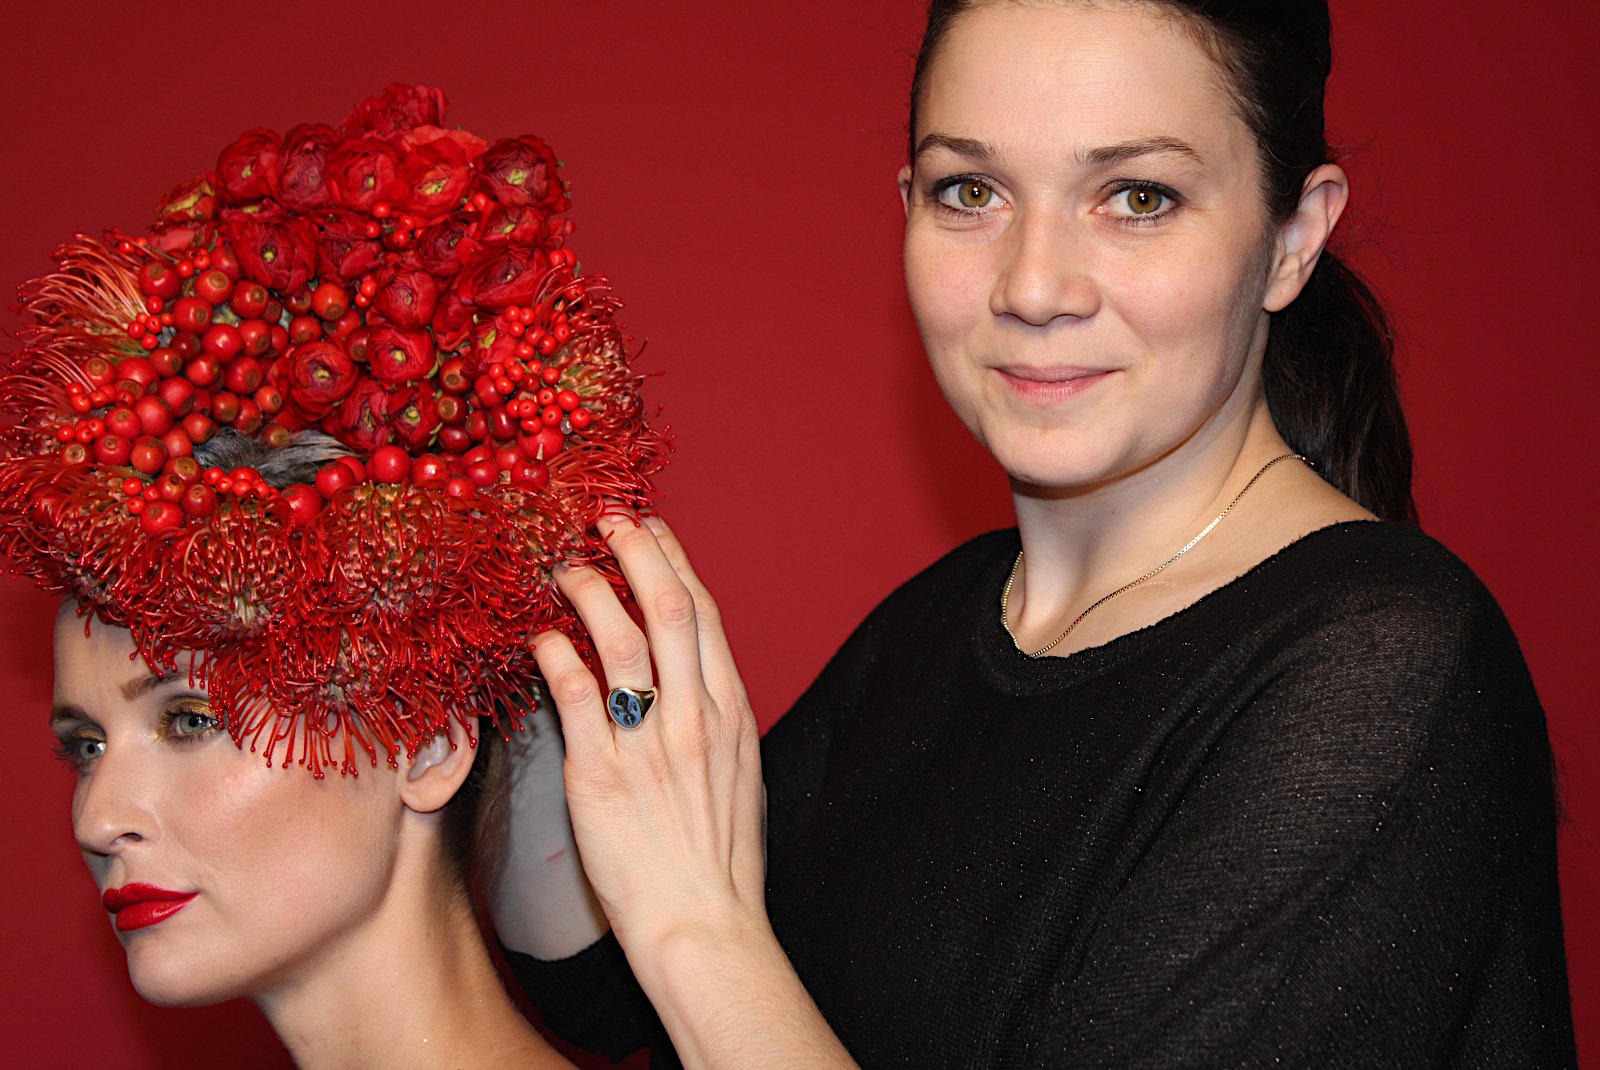 Profil no15: International floral designer Annette von Einem, København